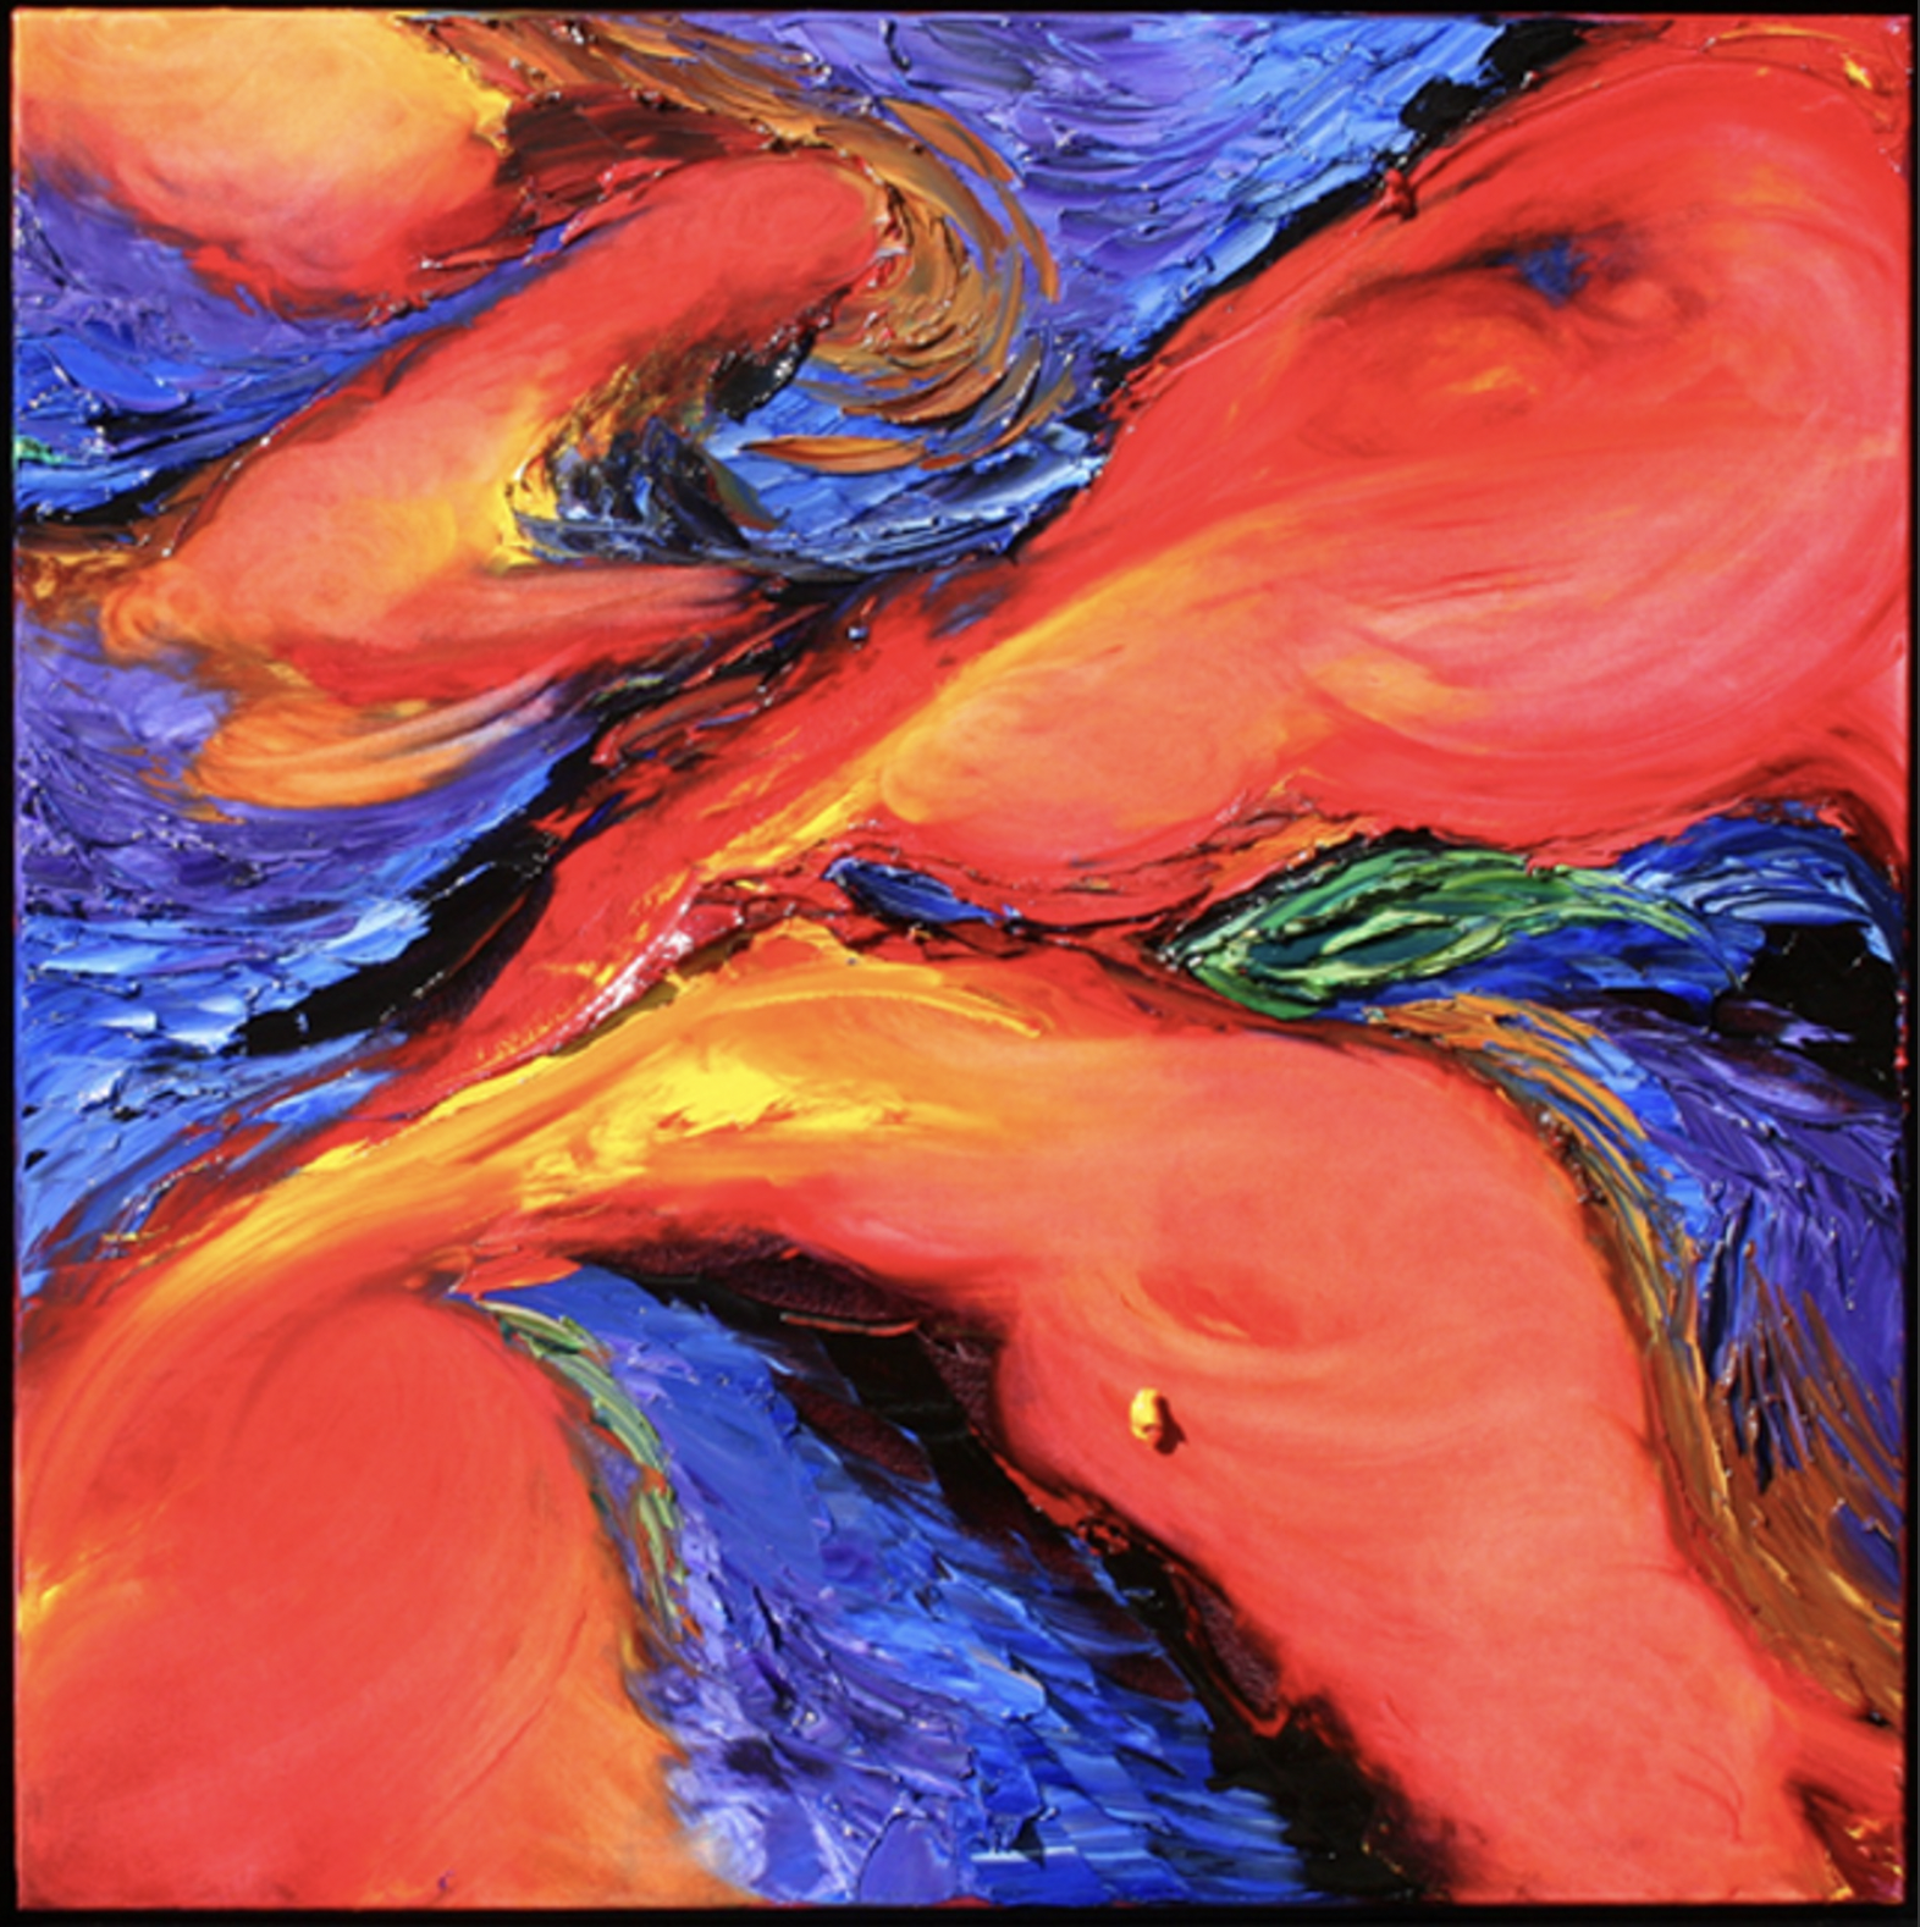 Cosmic Fire (2/2) by JD Miller